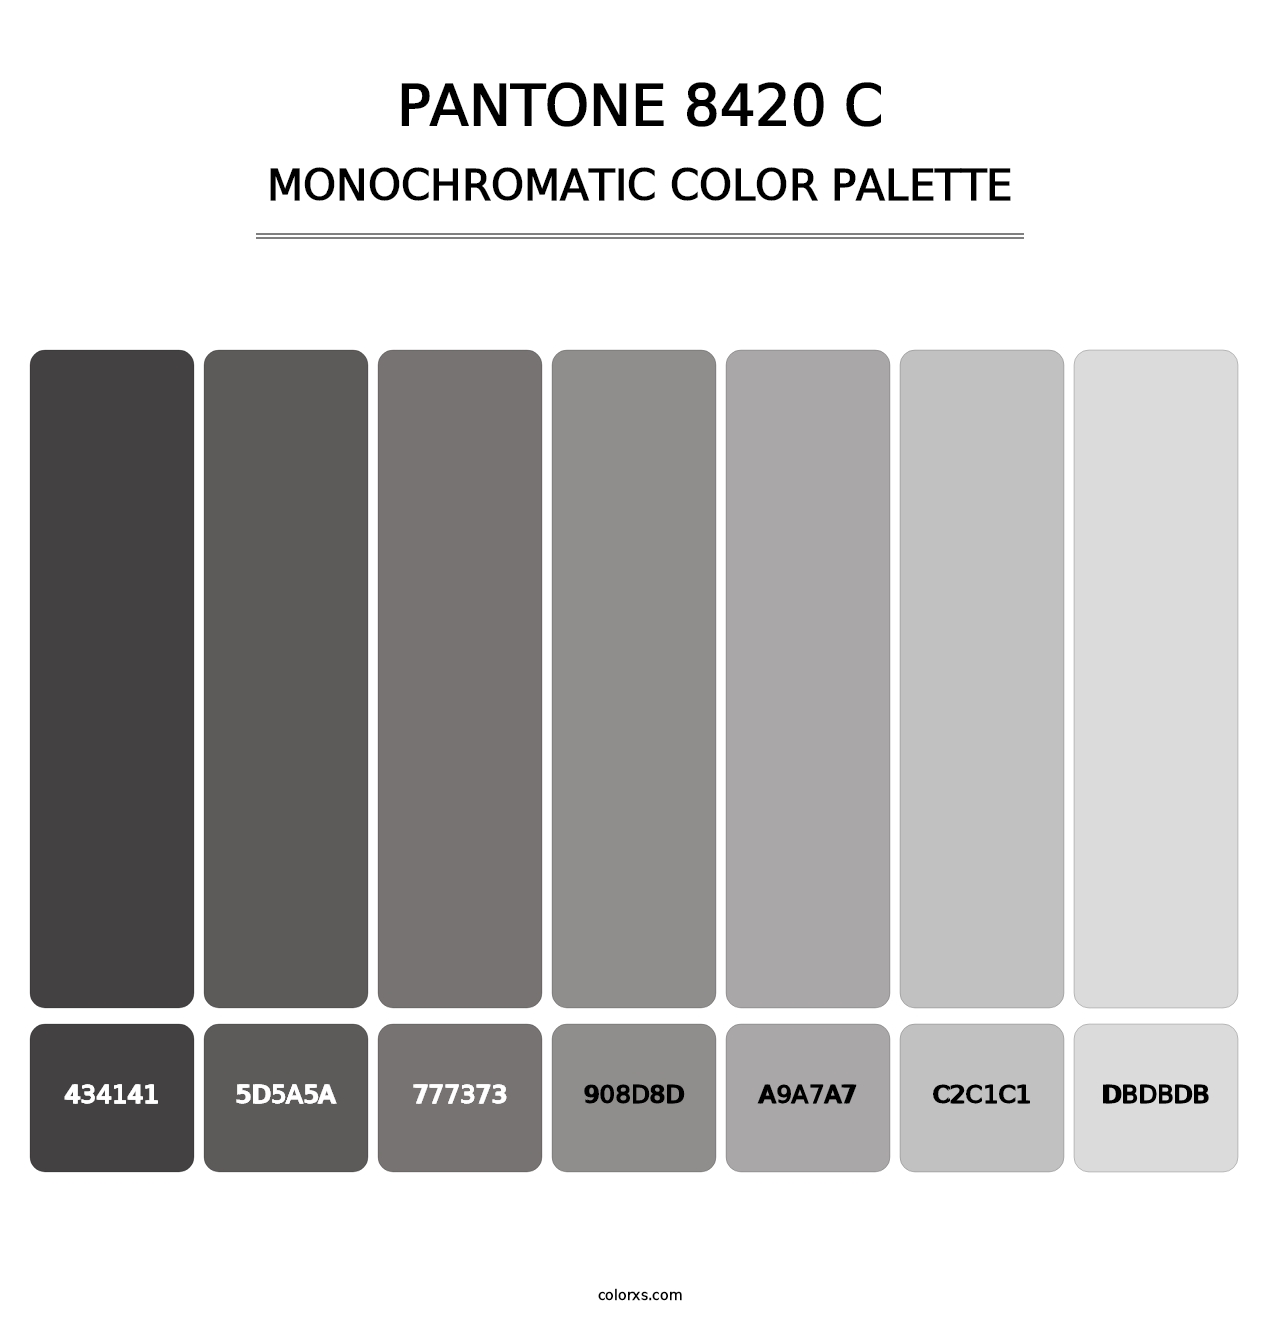 PANTONE 8420 C - Monochromatic Color Palette